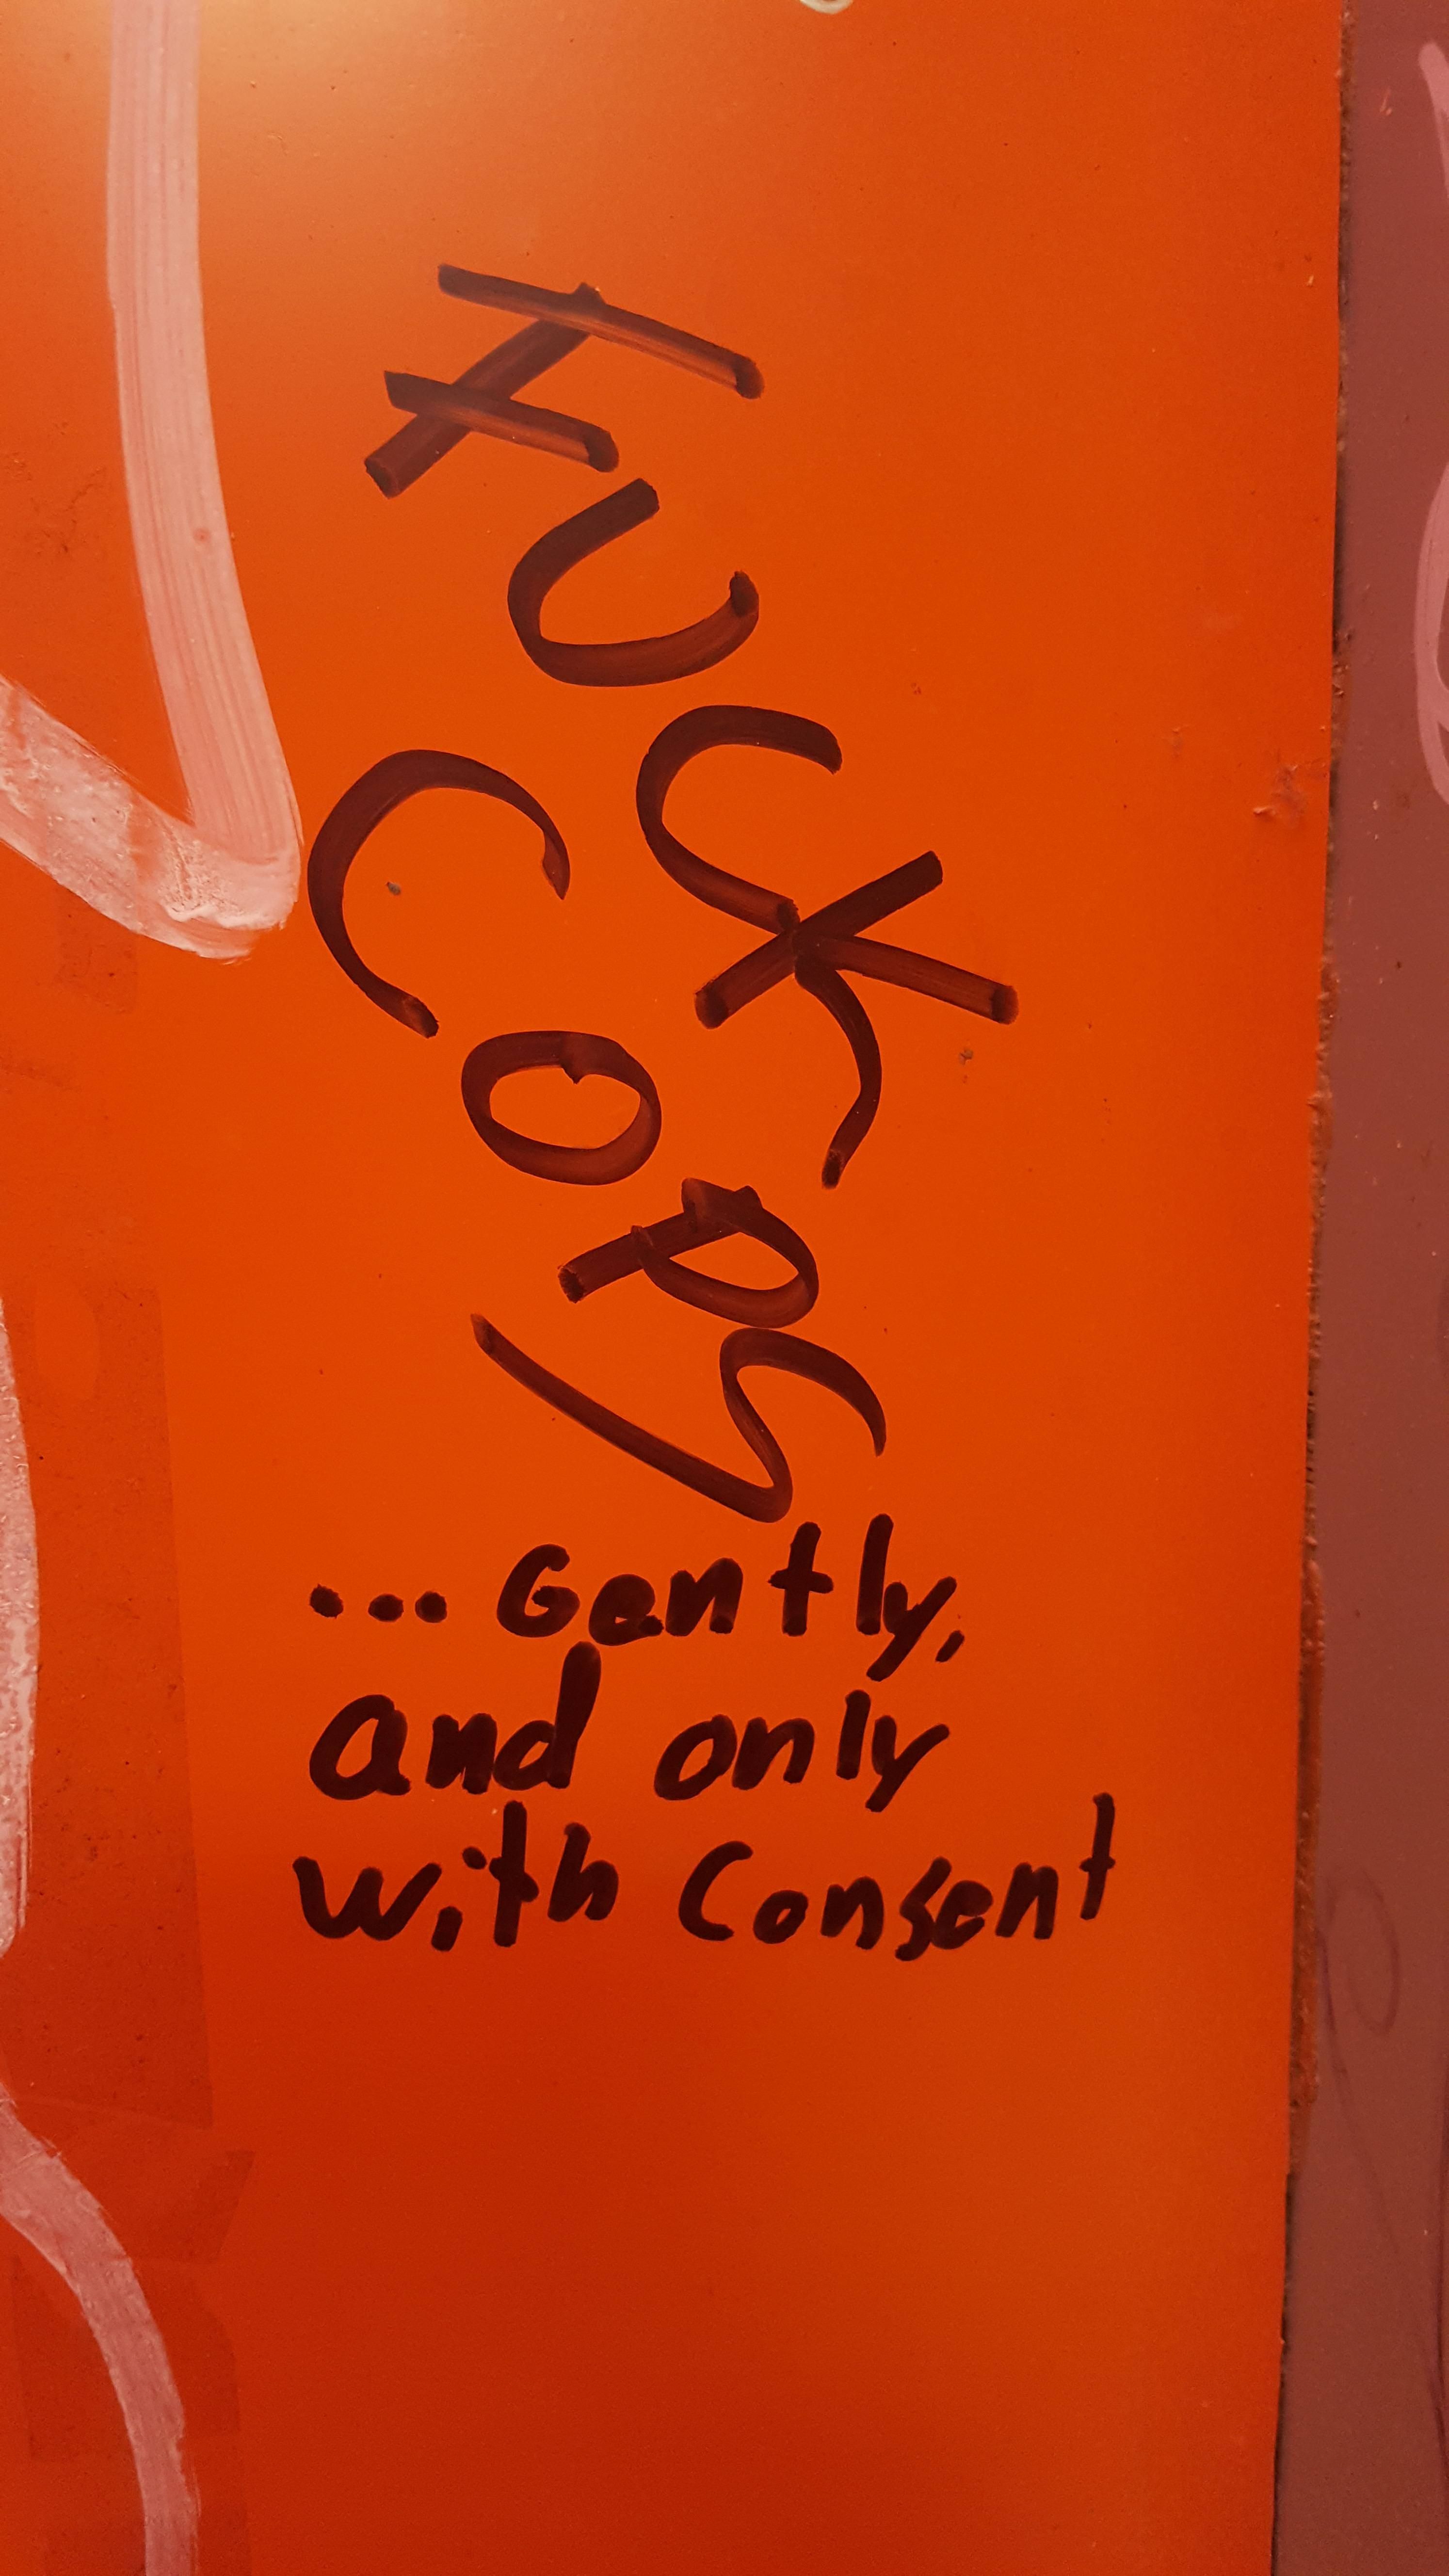 Wholesome graffitti